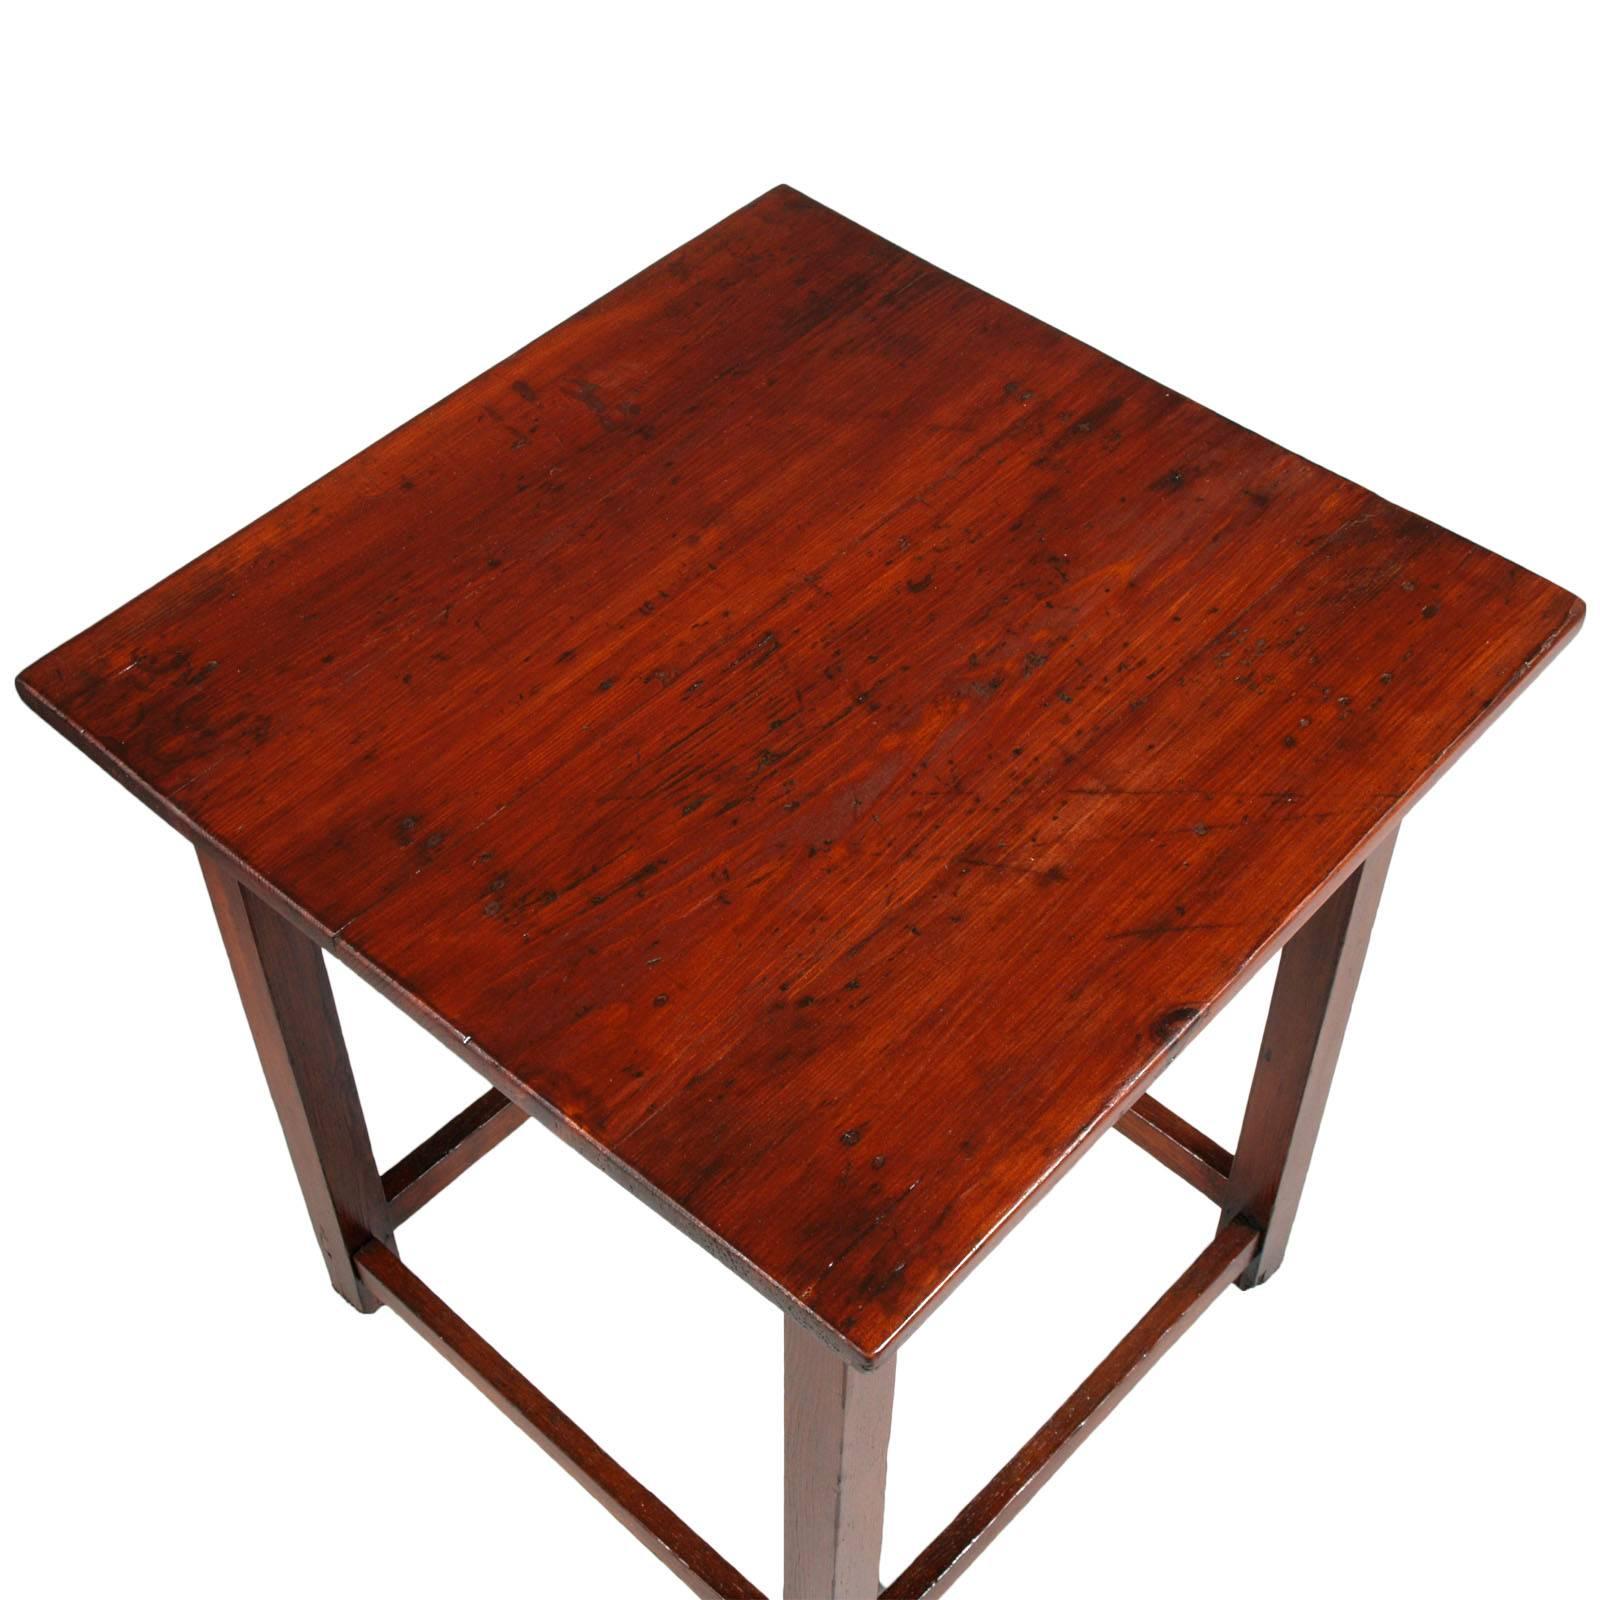 Ancienne table basse ou table d'appoint en mélèze massif, restaurée et cirée.

Dimensions en cm : H 56, L 50, P 50.